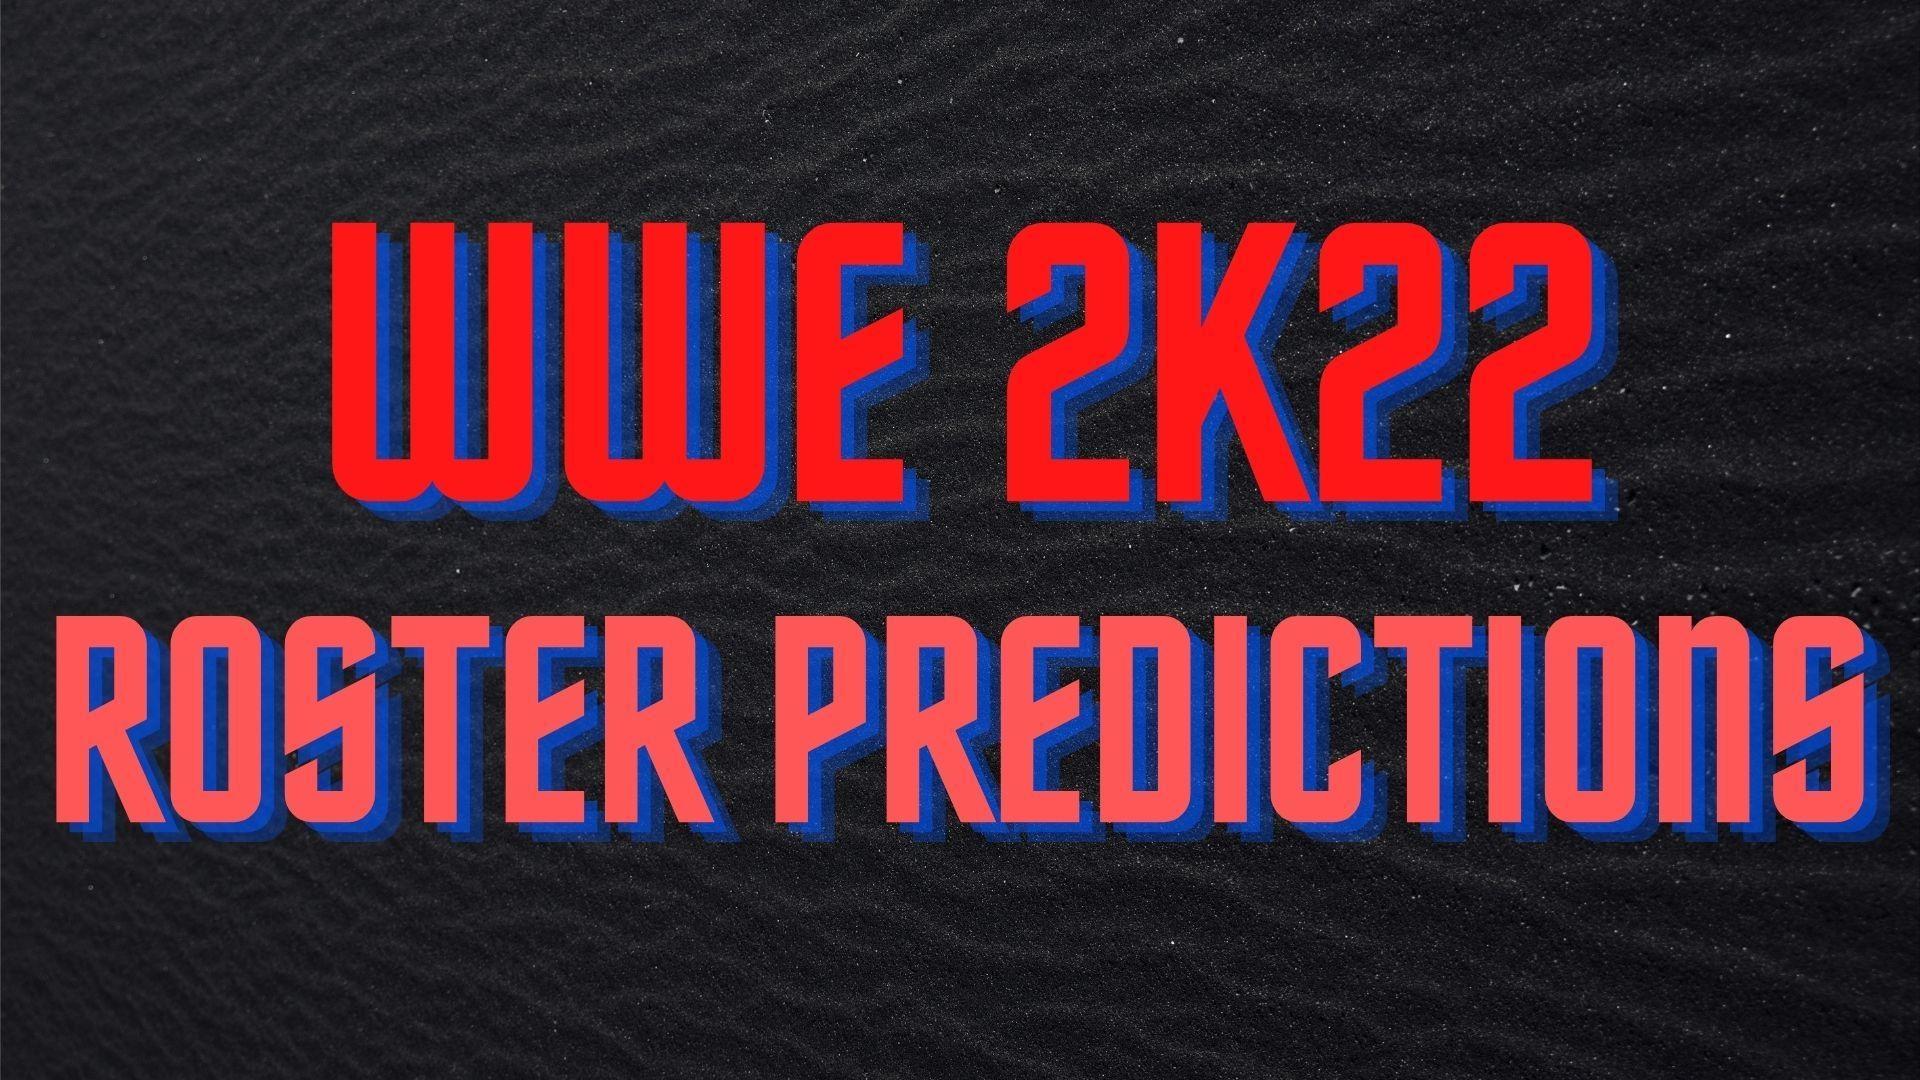 Wwe 2k22 Roster Predictions June 21 Current Superstars Legends